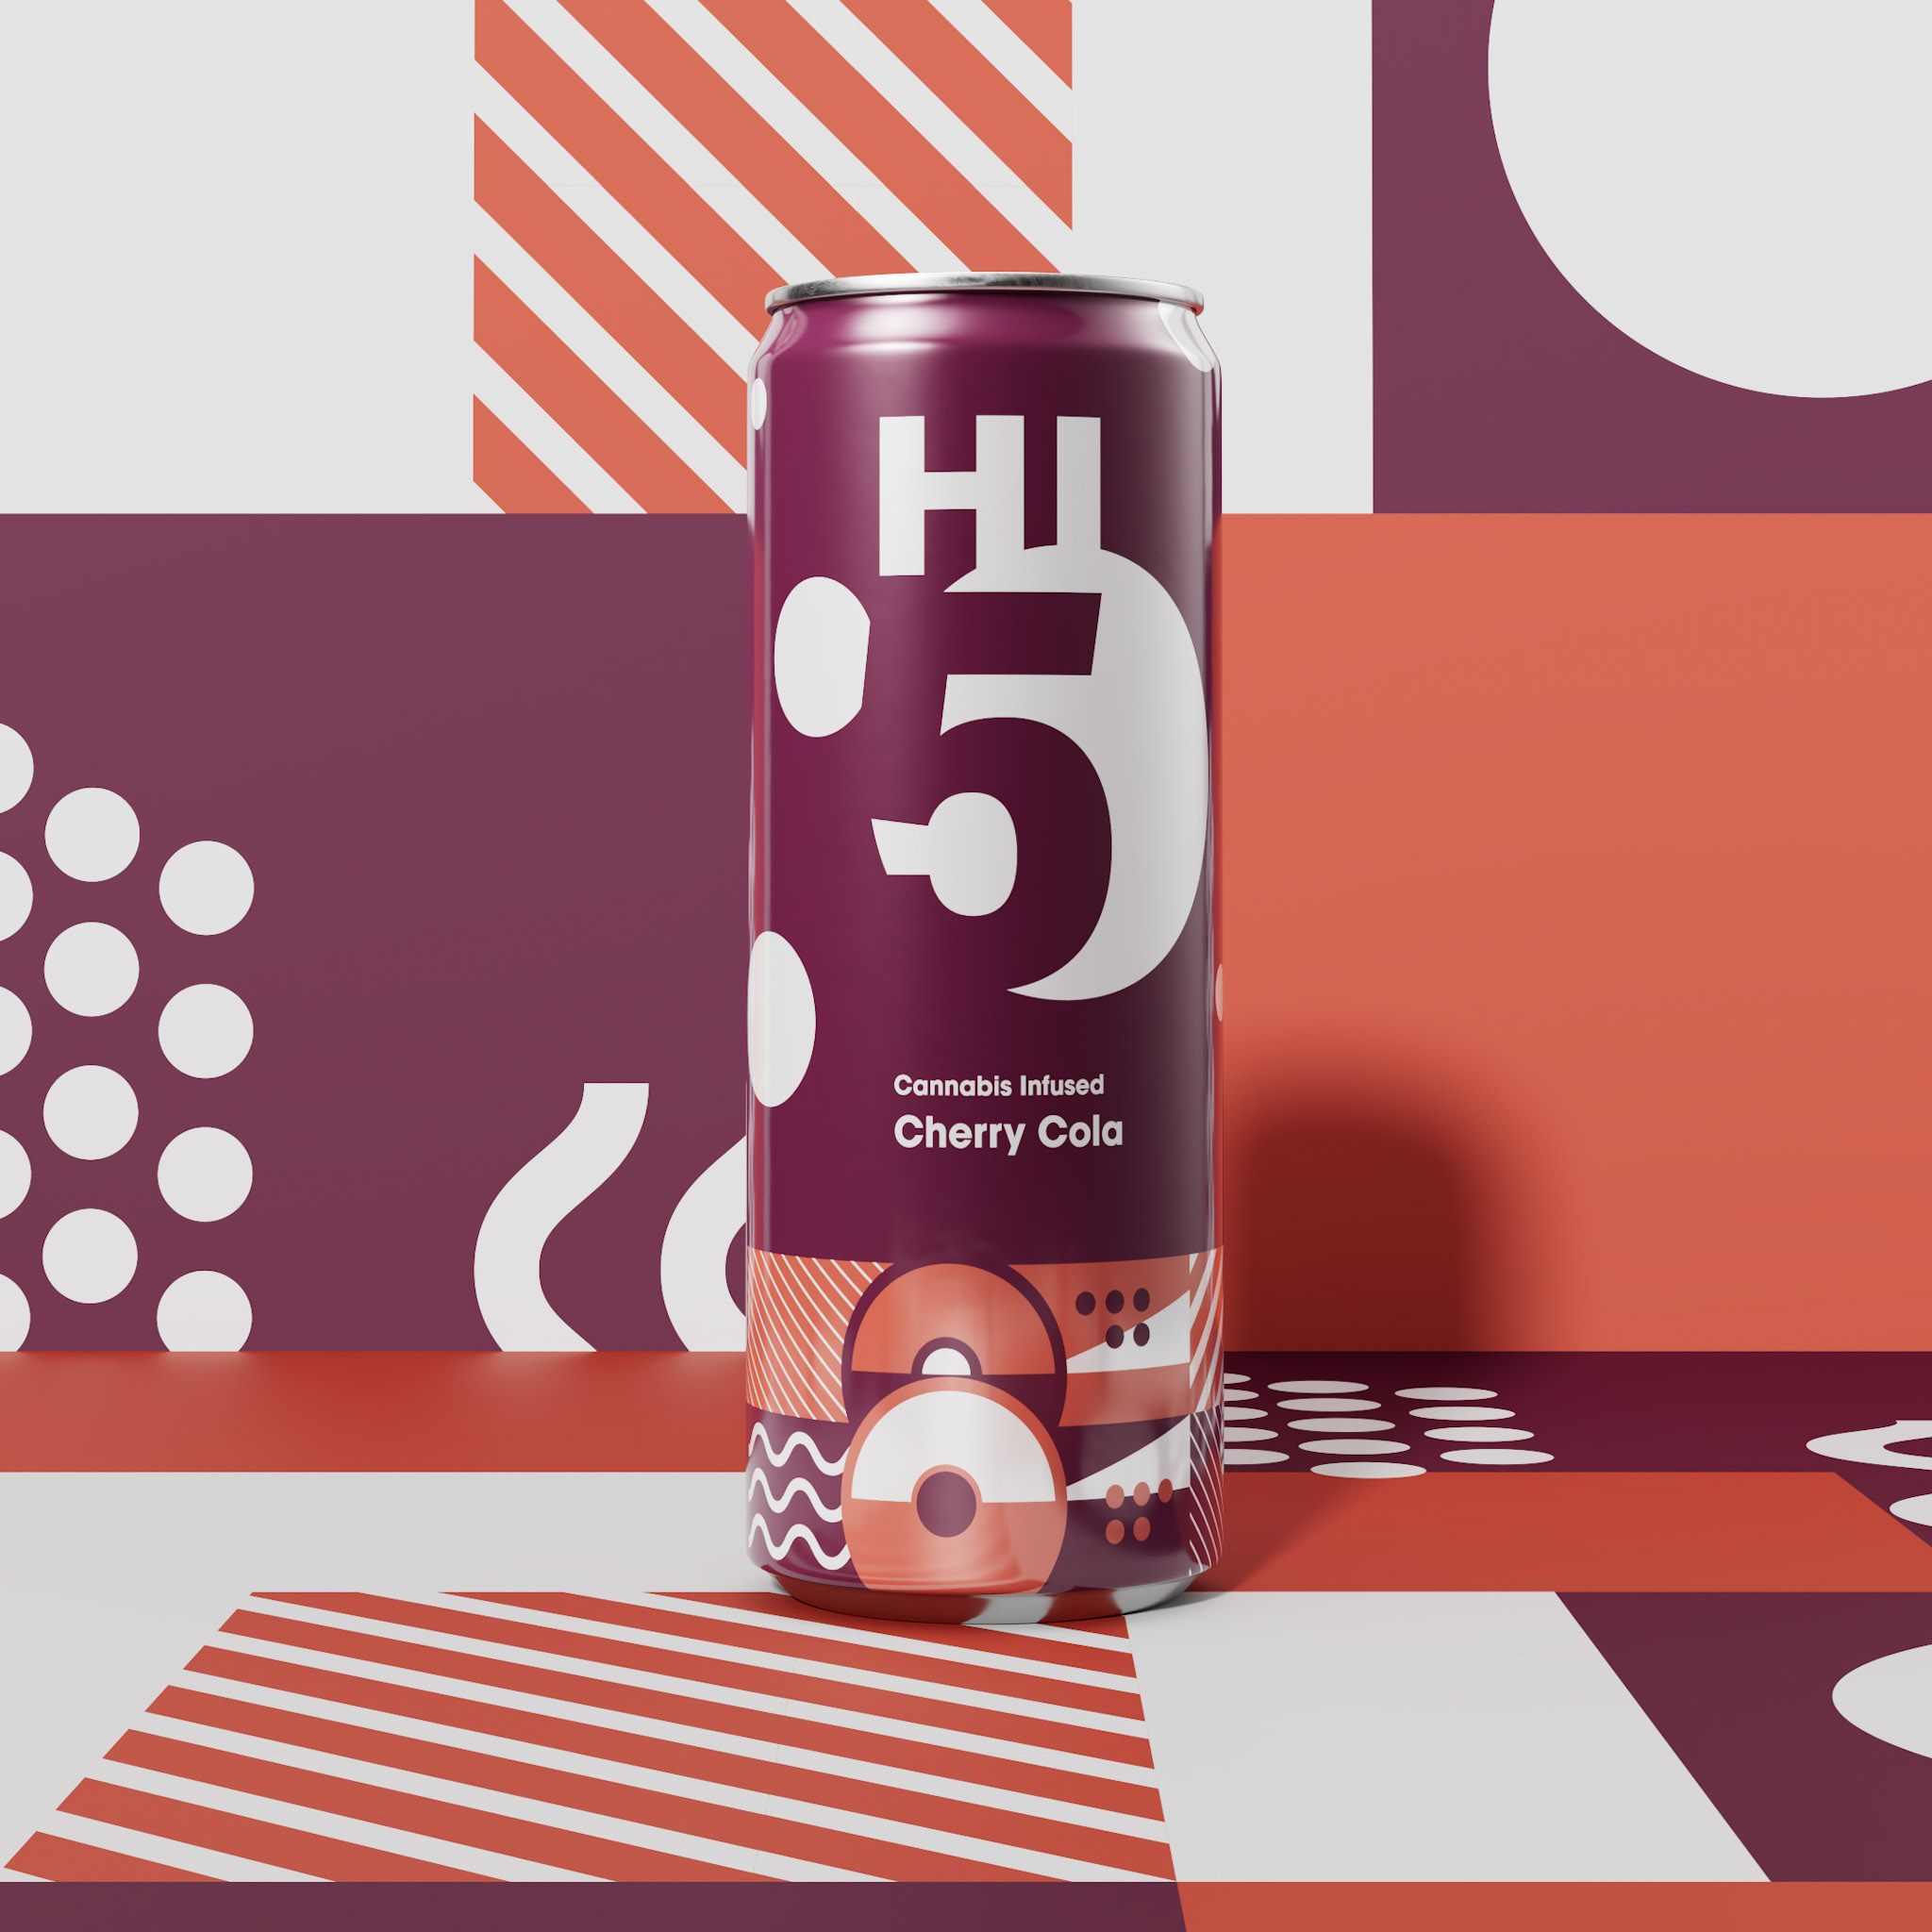 Hi5 Cherry Cola